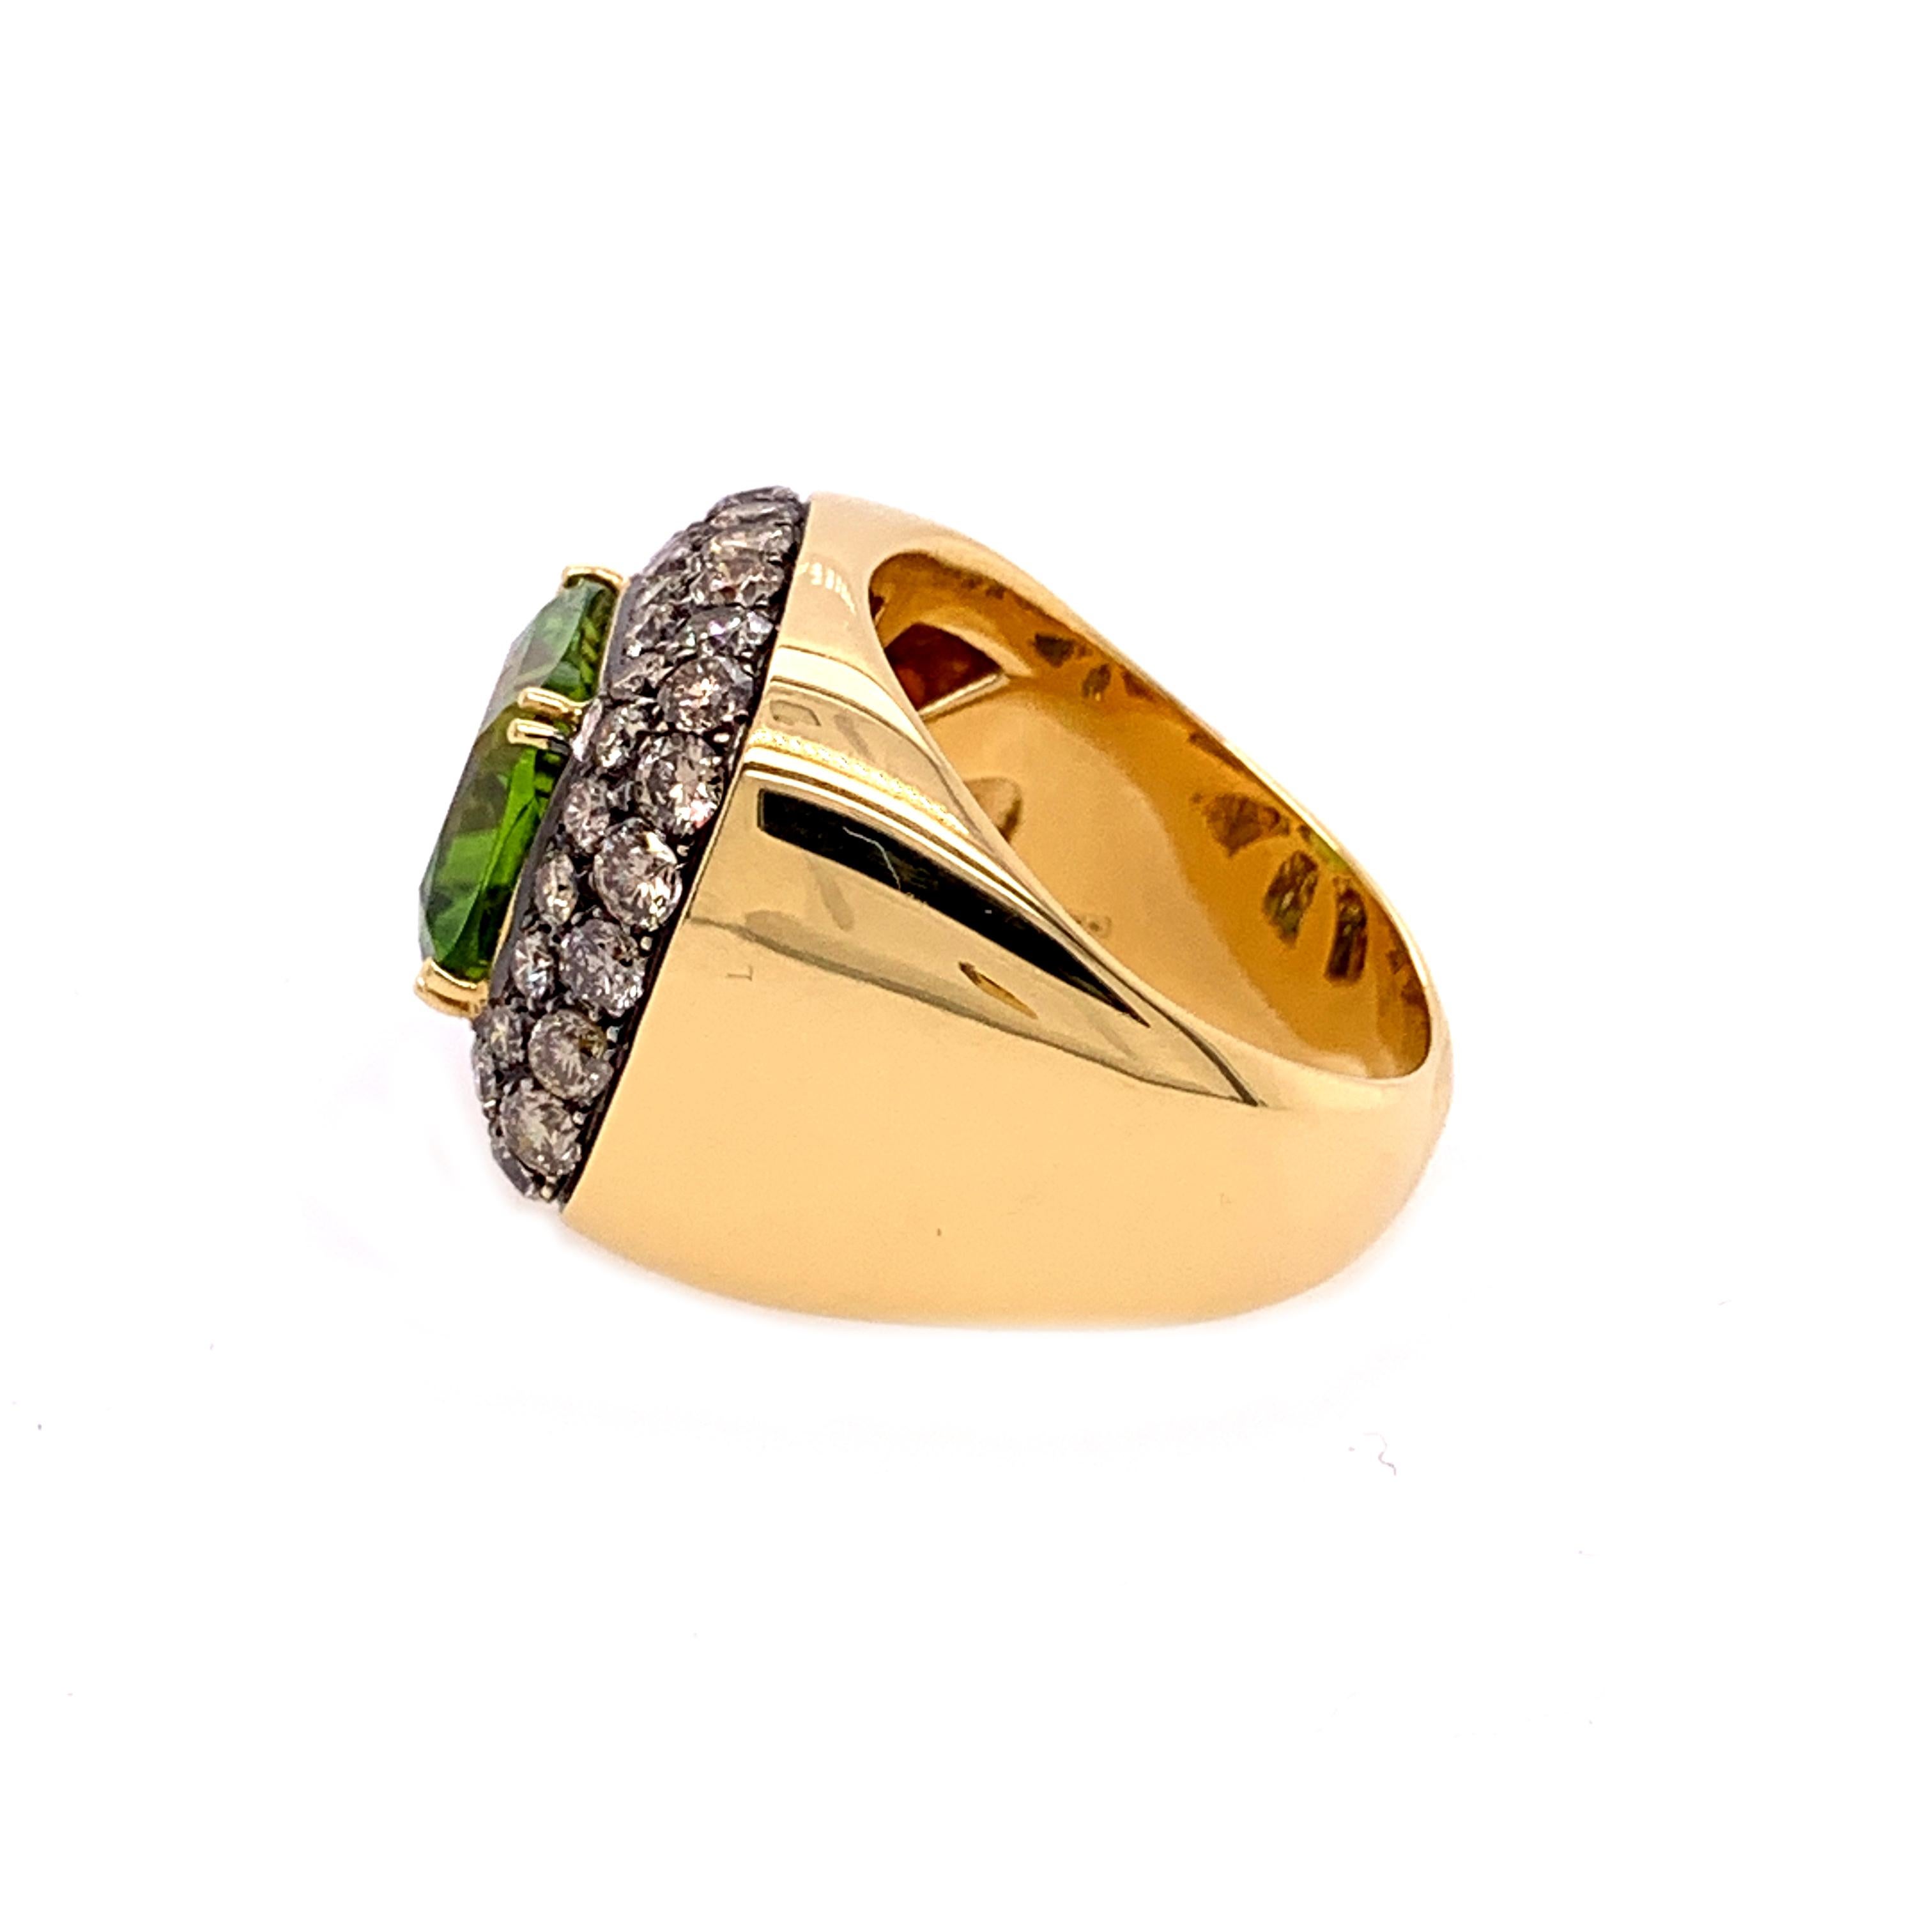 18 Karat Gelbgold Braune Diamanten  und  Peridot Ring, Fingergröße 54.5
18kt Weißgold   gr: 15,80
Braune Diamanten ct 0,54
Eine schöne   quadratisch geschliffener Peridot von 10,40 ct, umgeben von einem Kissen aus braunen Diamanten.
Passende